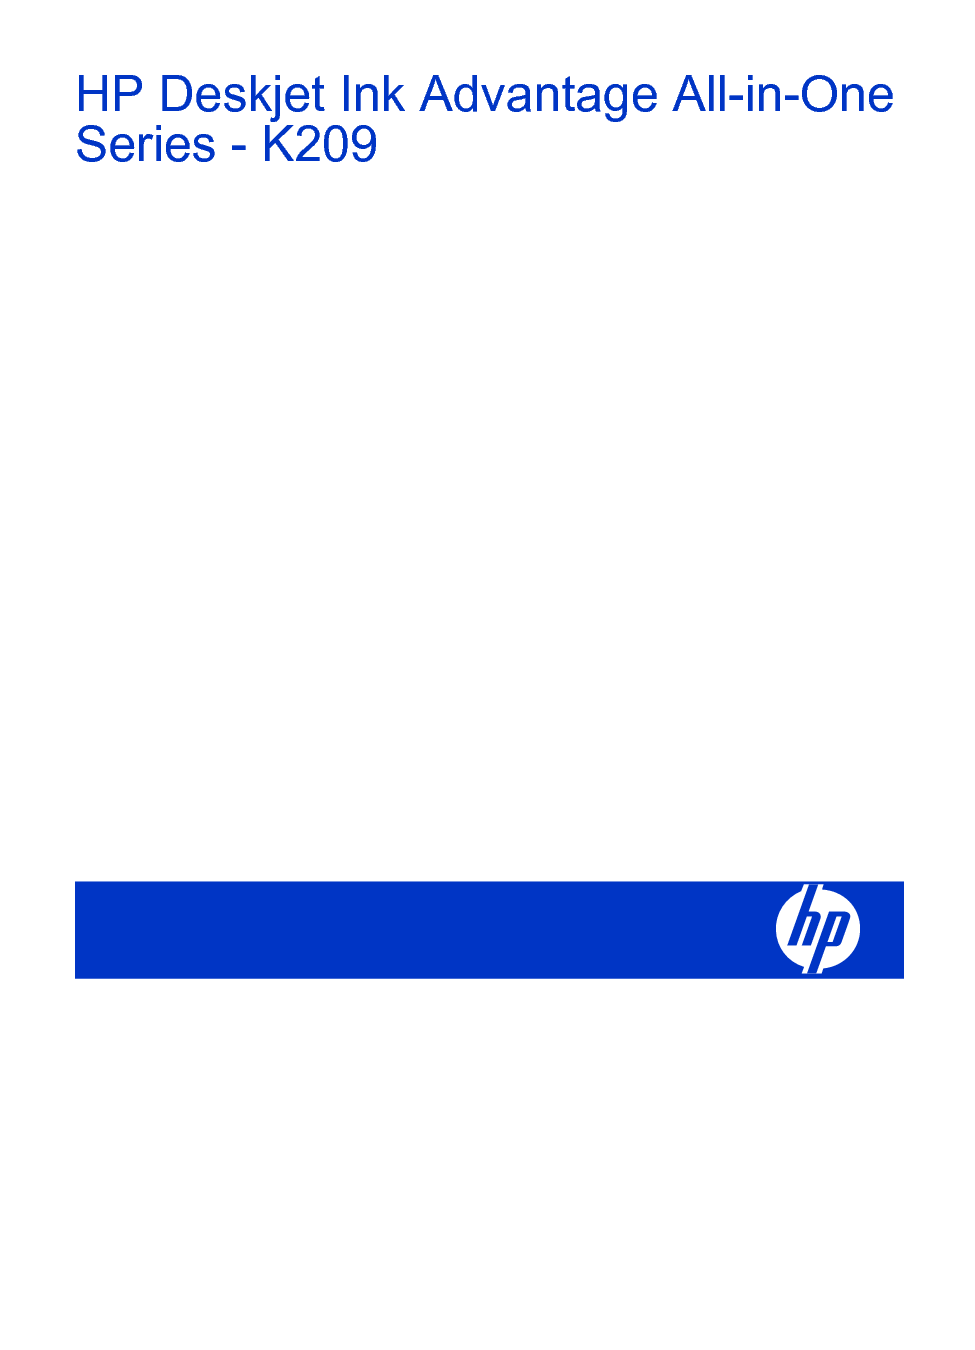 惠普 HP DeskJet Ink Advantage K209 Windows 用户指南 第1页